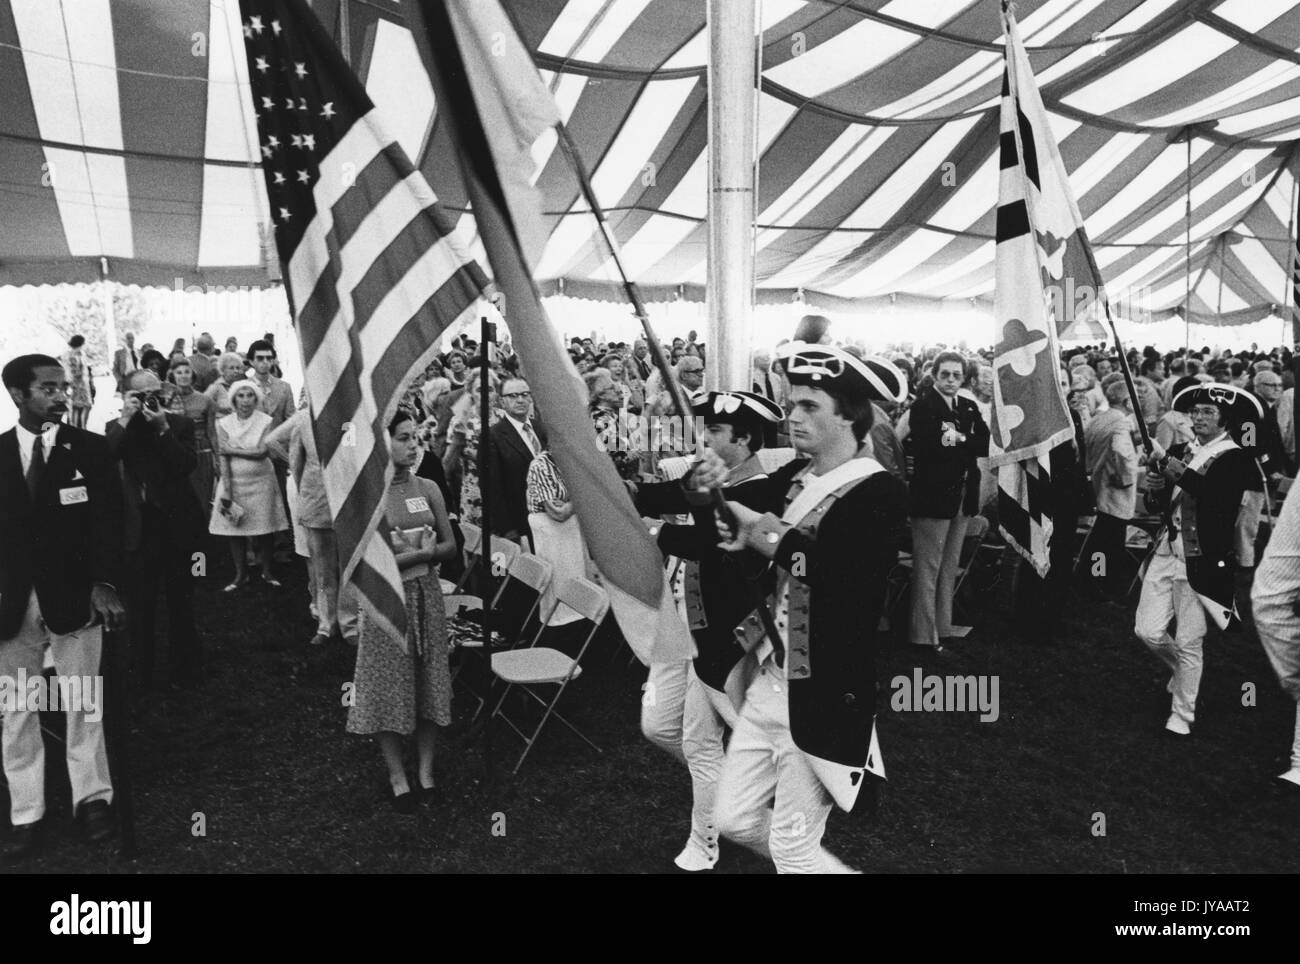 Bandiere e pubblico sotto una tenda alla cerimonia di apertura della Convocazione Bicentennial tenutasi al campus Homewood della Johns Hopkins University, 16 luglio 1976. Foto Stock